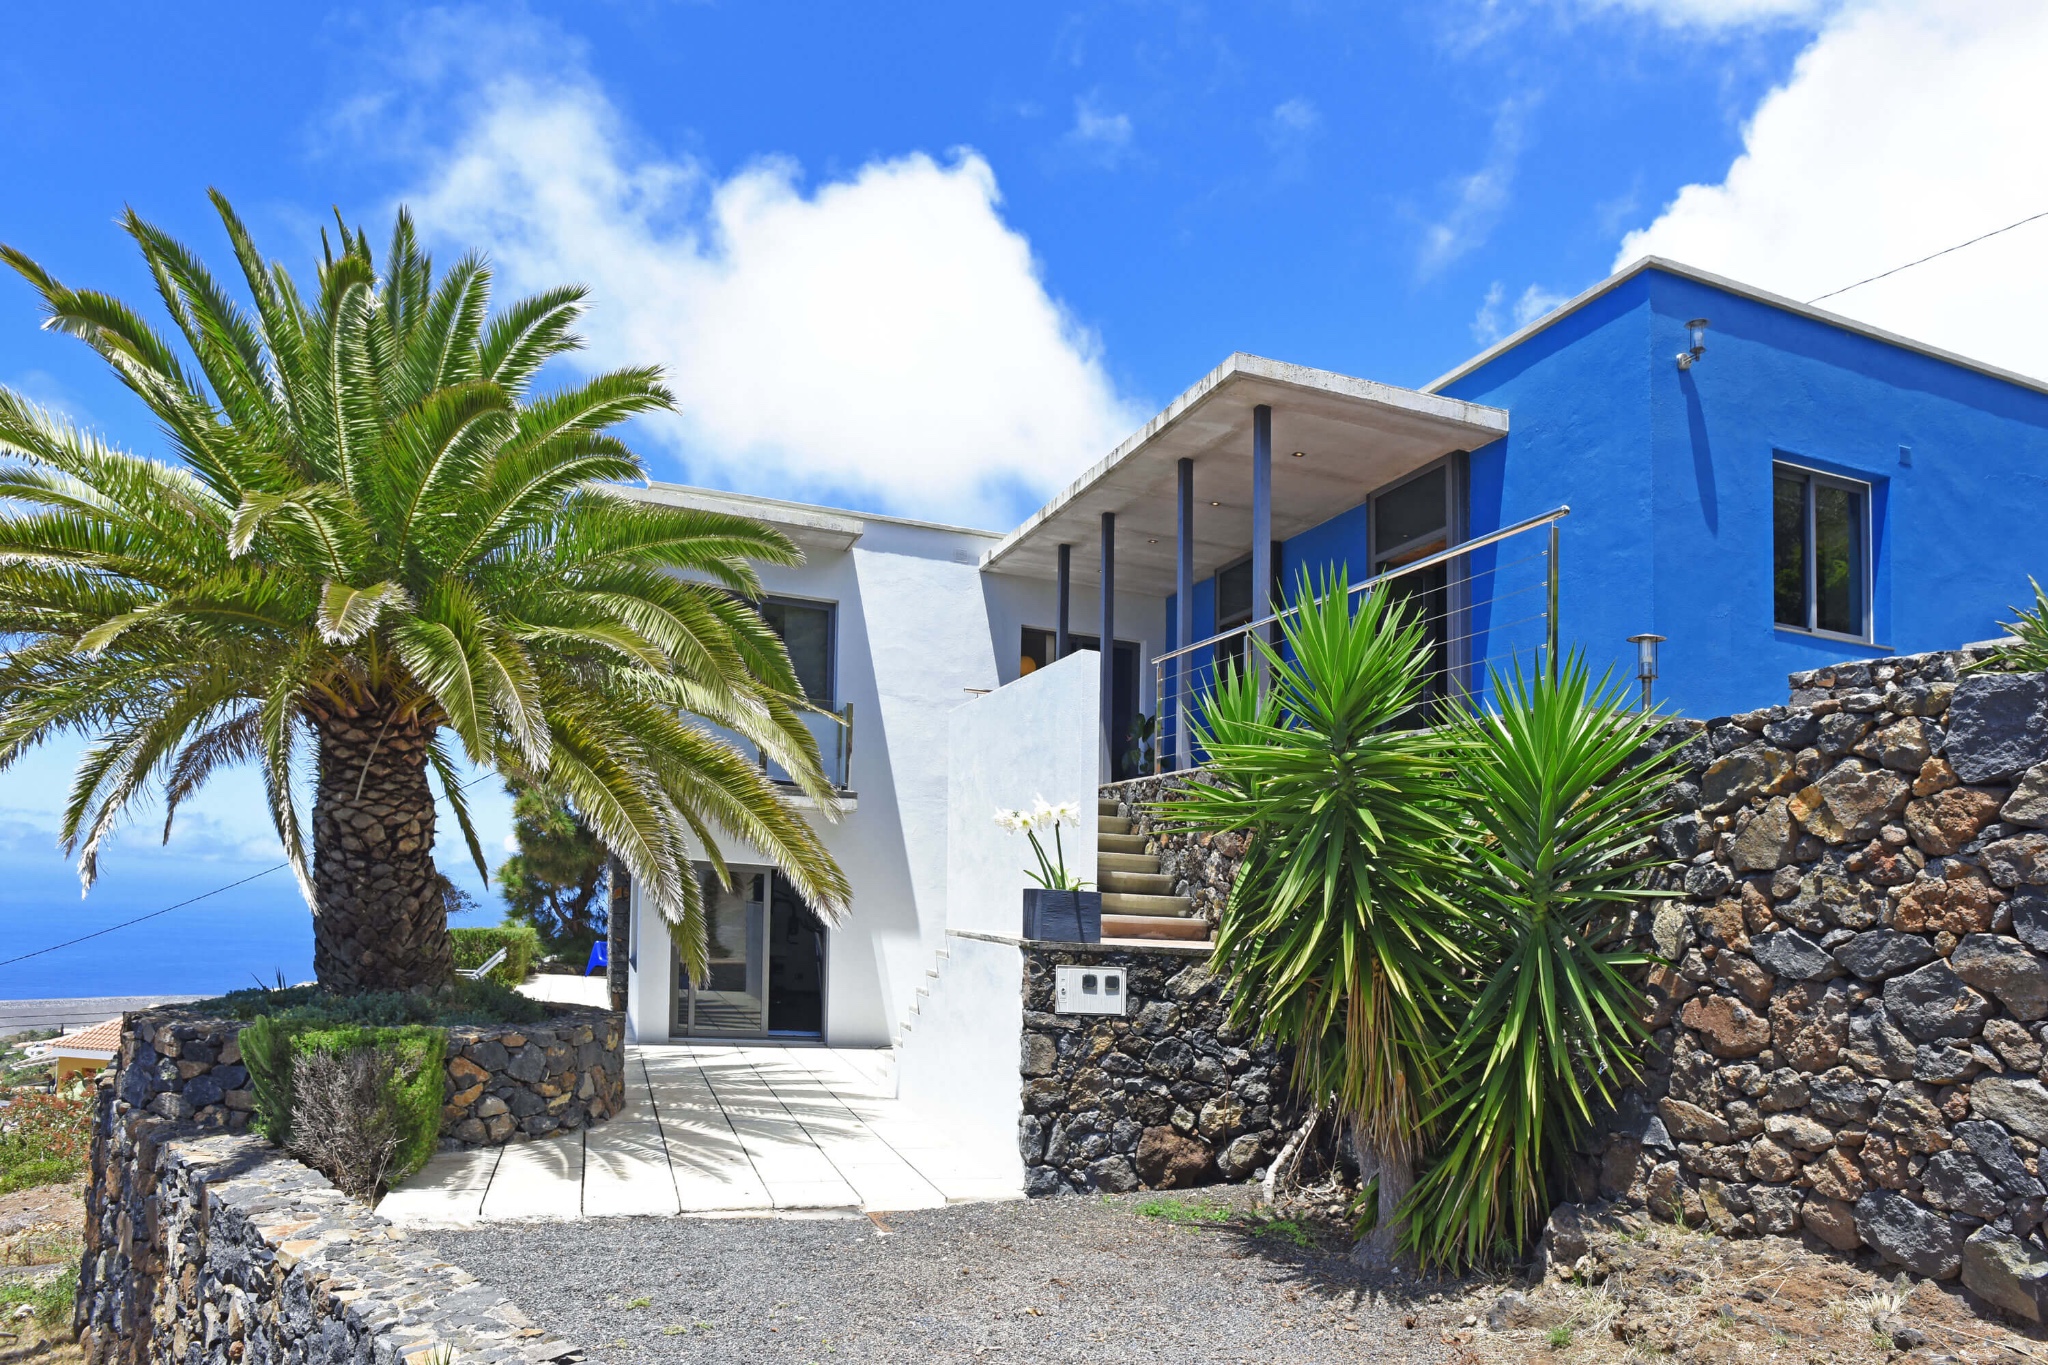 Maison moderne pour 4 personnes dans la belle région de Tijarafe avec superbe vue mer et paysage